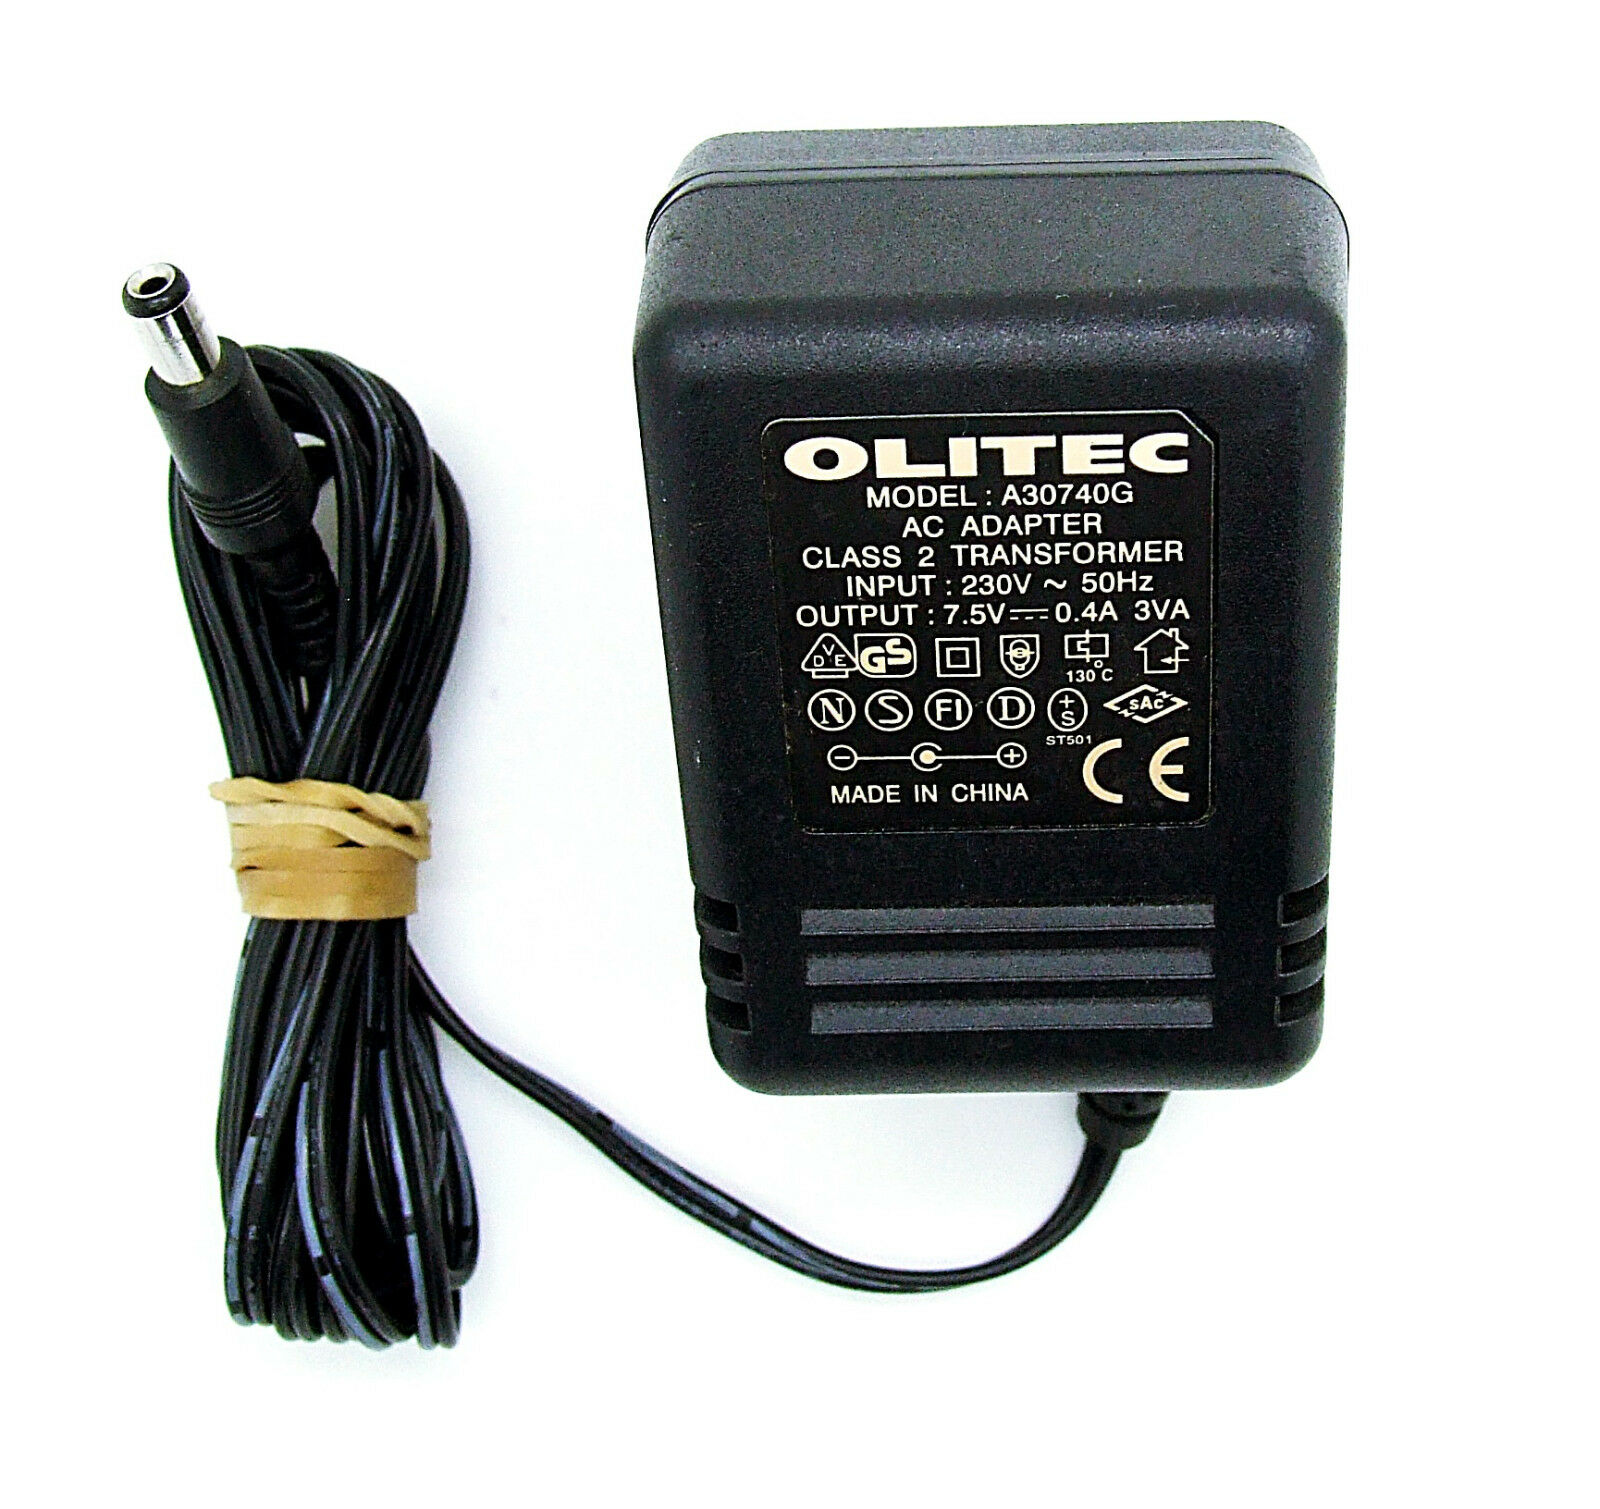 Original Olitec Power Supply A30740G AC Adapter 7,5V 0,4A Item Description Original Olitec power supply A30740G AC a